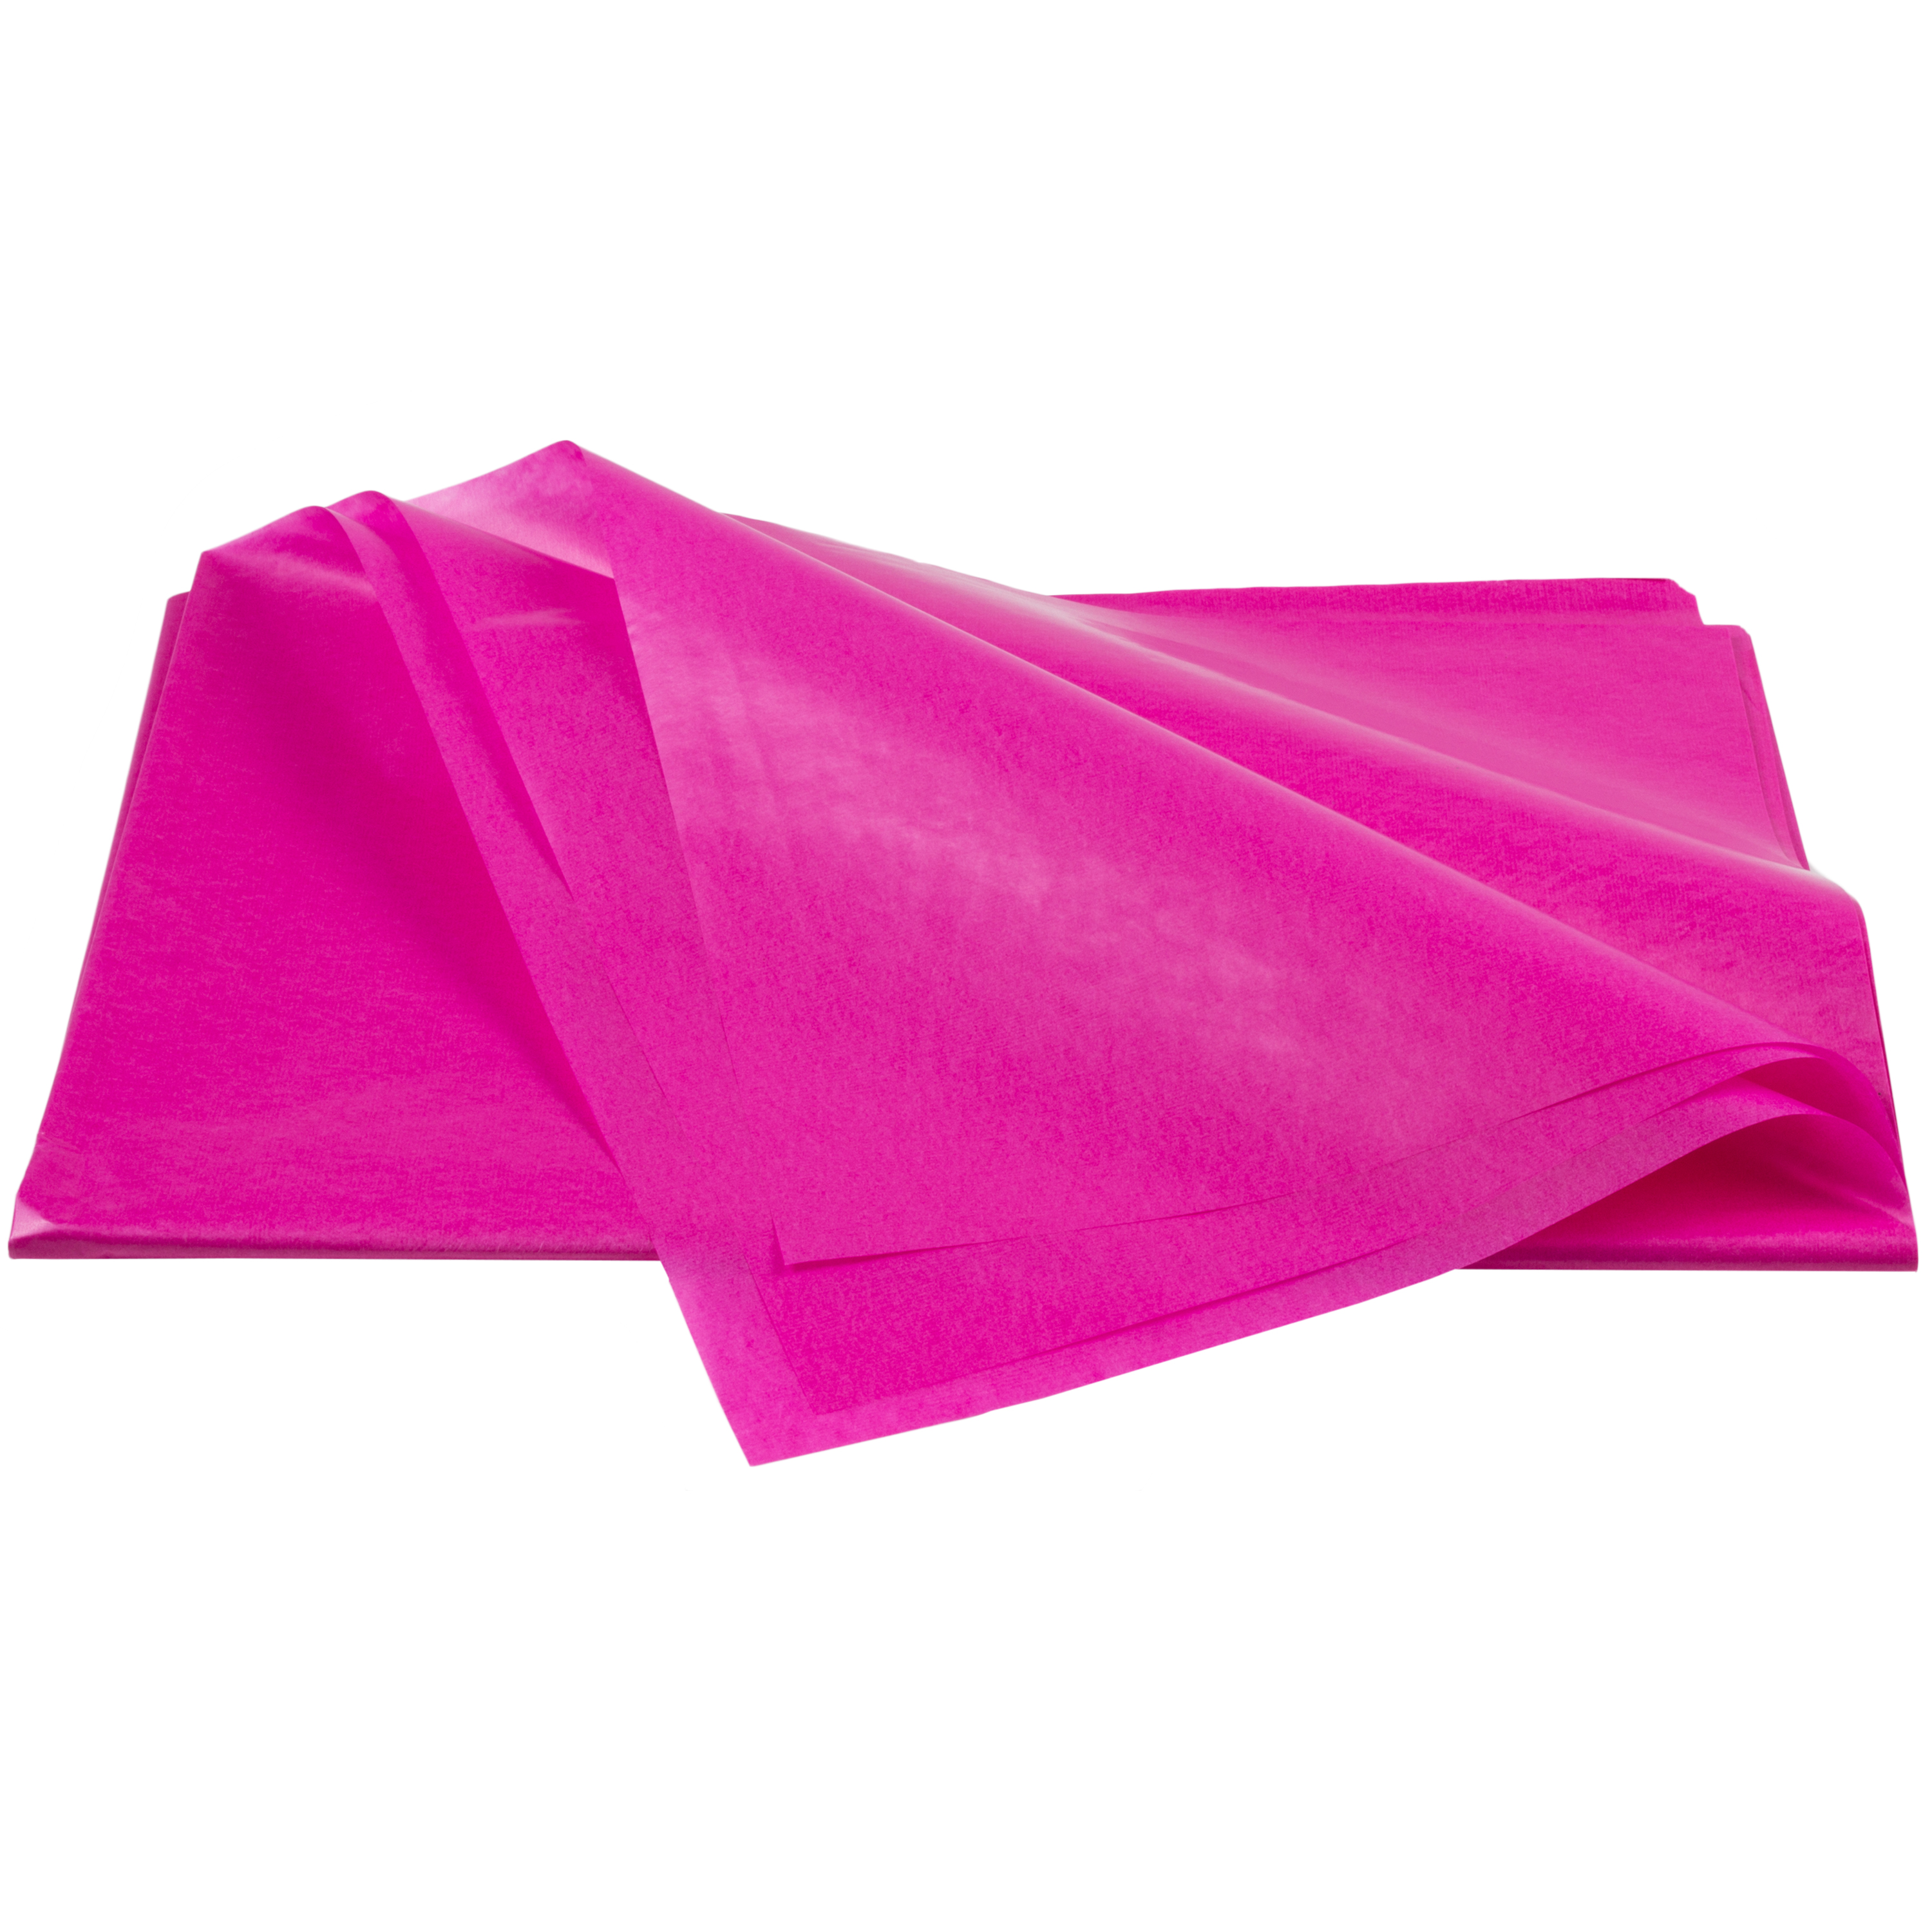 Transparentpapier pink, 42 g/m², 25 Bögen